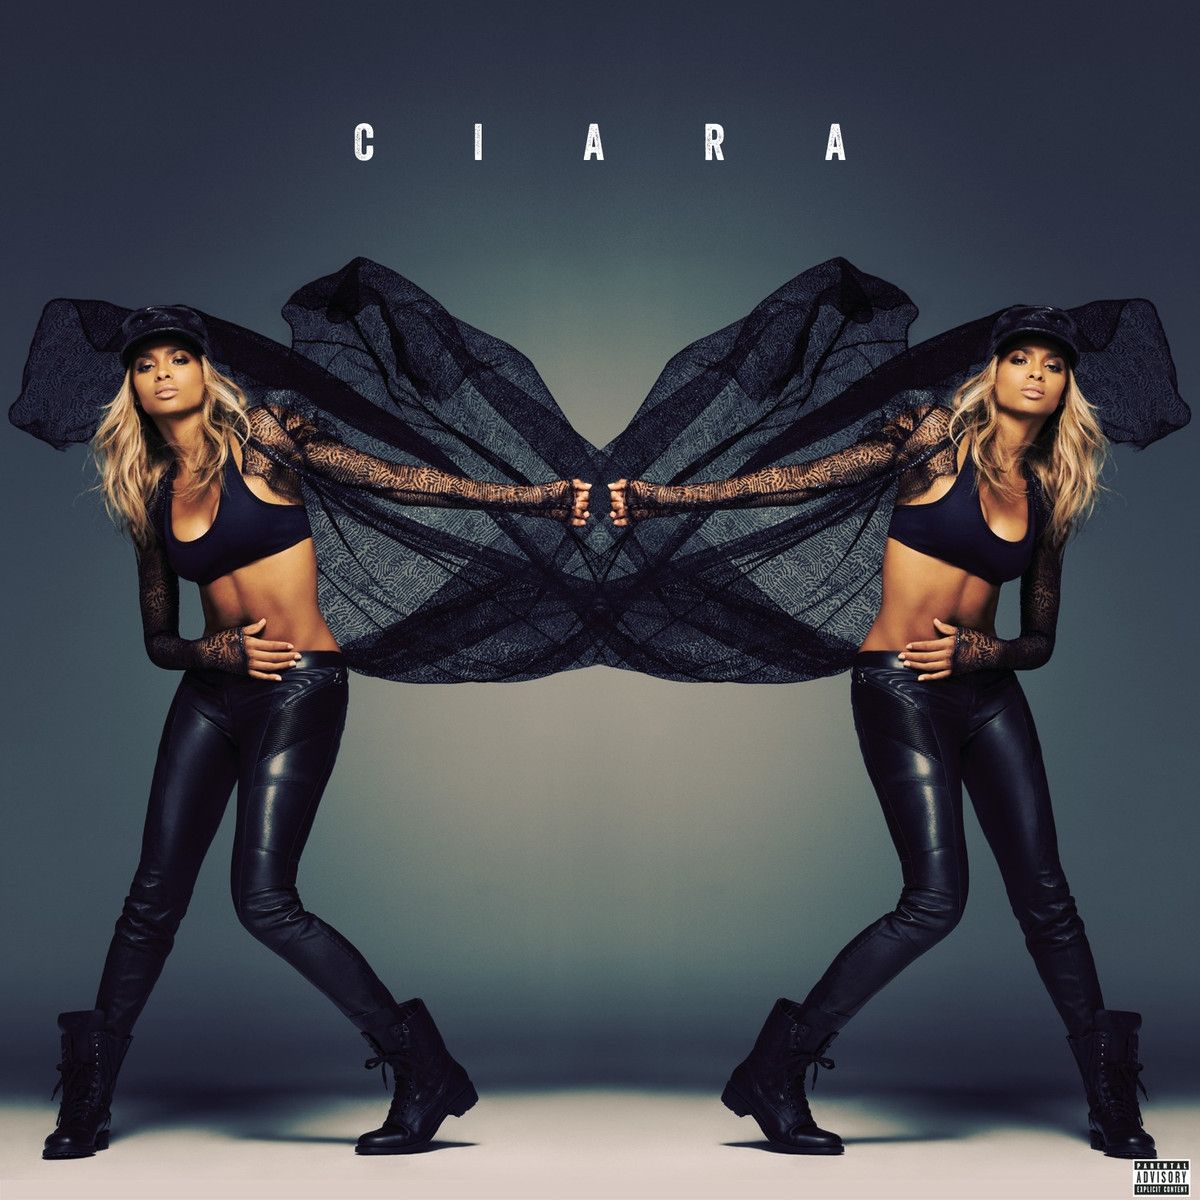 Imagem do álbum (Ciara) do(a) artista Ciara